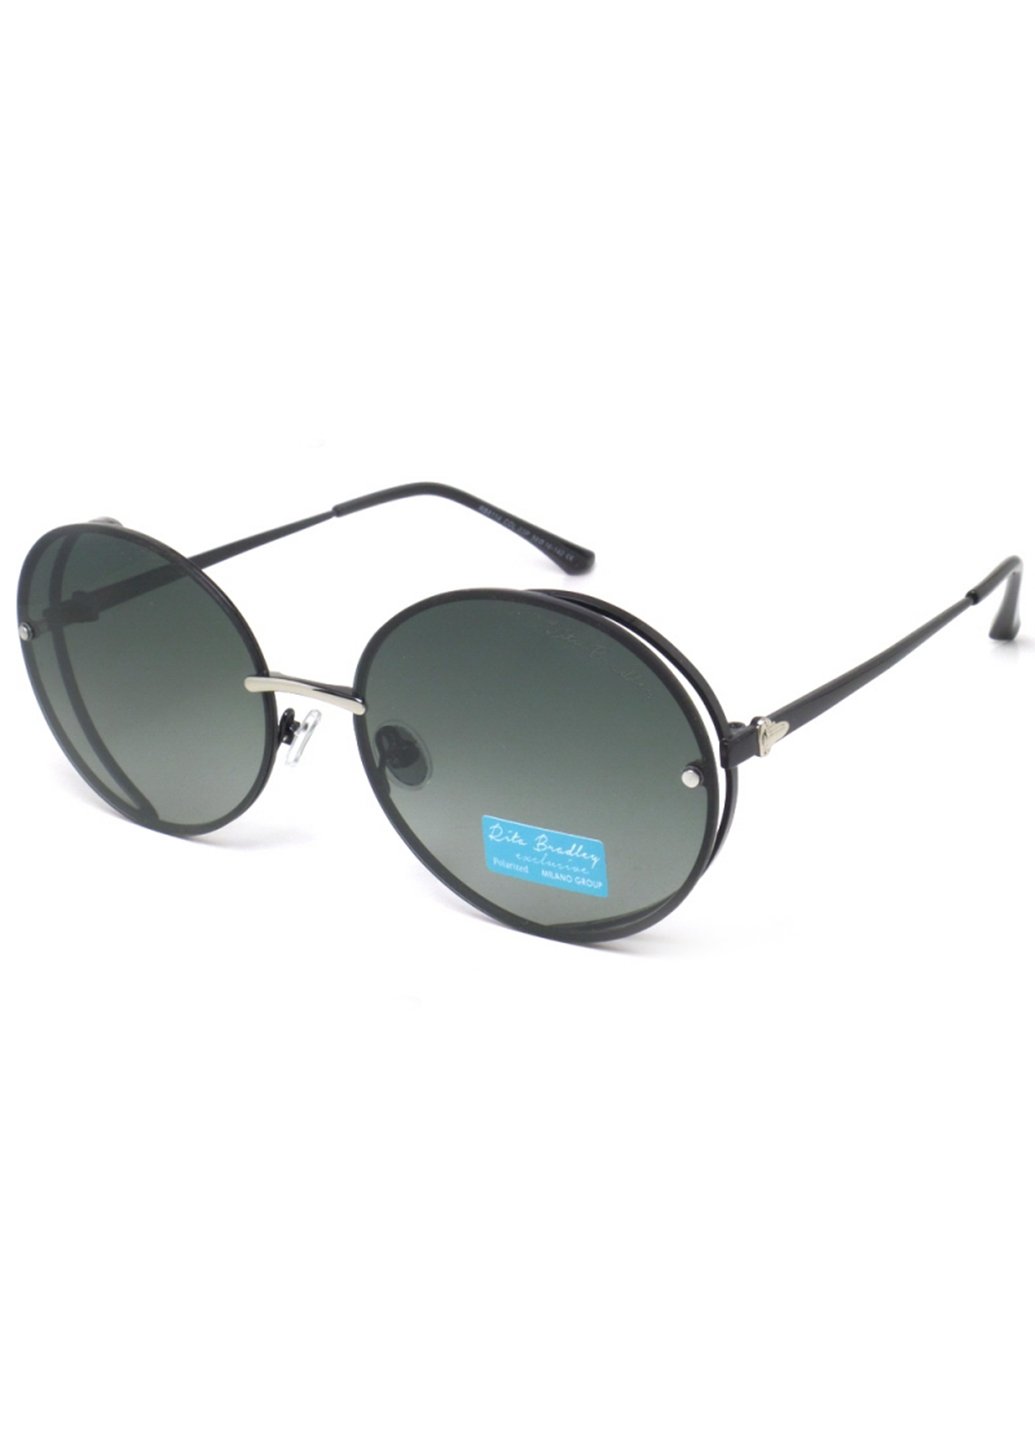 Купить Женские солнцезащитные очки Rita Bradley с поляризацией RB8114 112019 в интернет-магазине